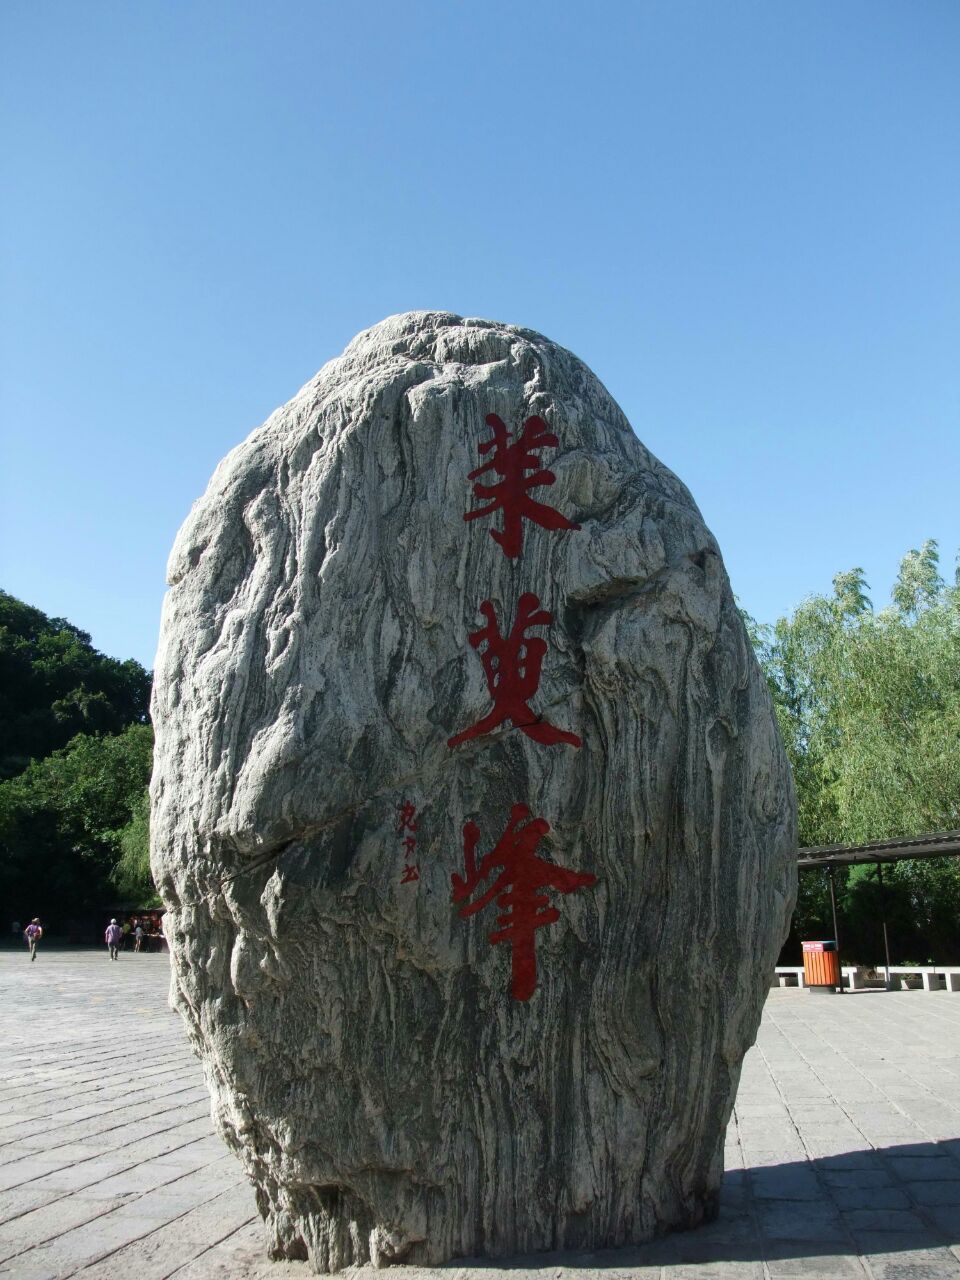 茱萸峰位于河南省焦作市的云台山景区内,茱萸峰海拔1308米,是历代文人